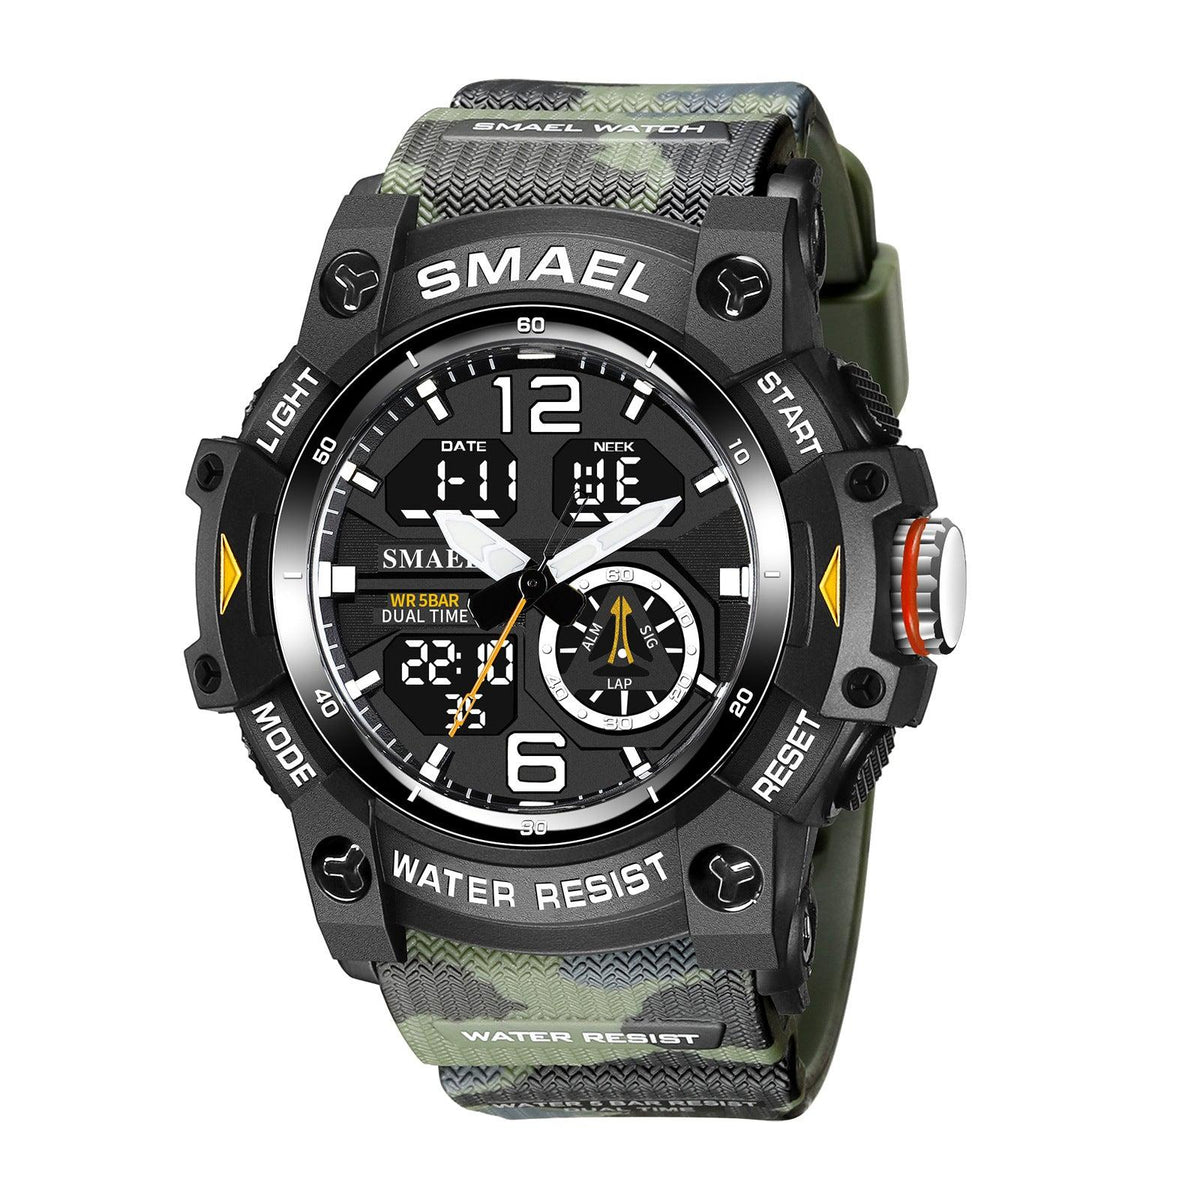 SMAEL Analog Digital Multifunctional Waterproof Watch For Men 8007